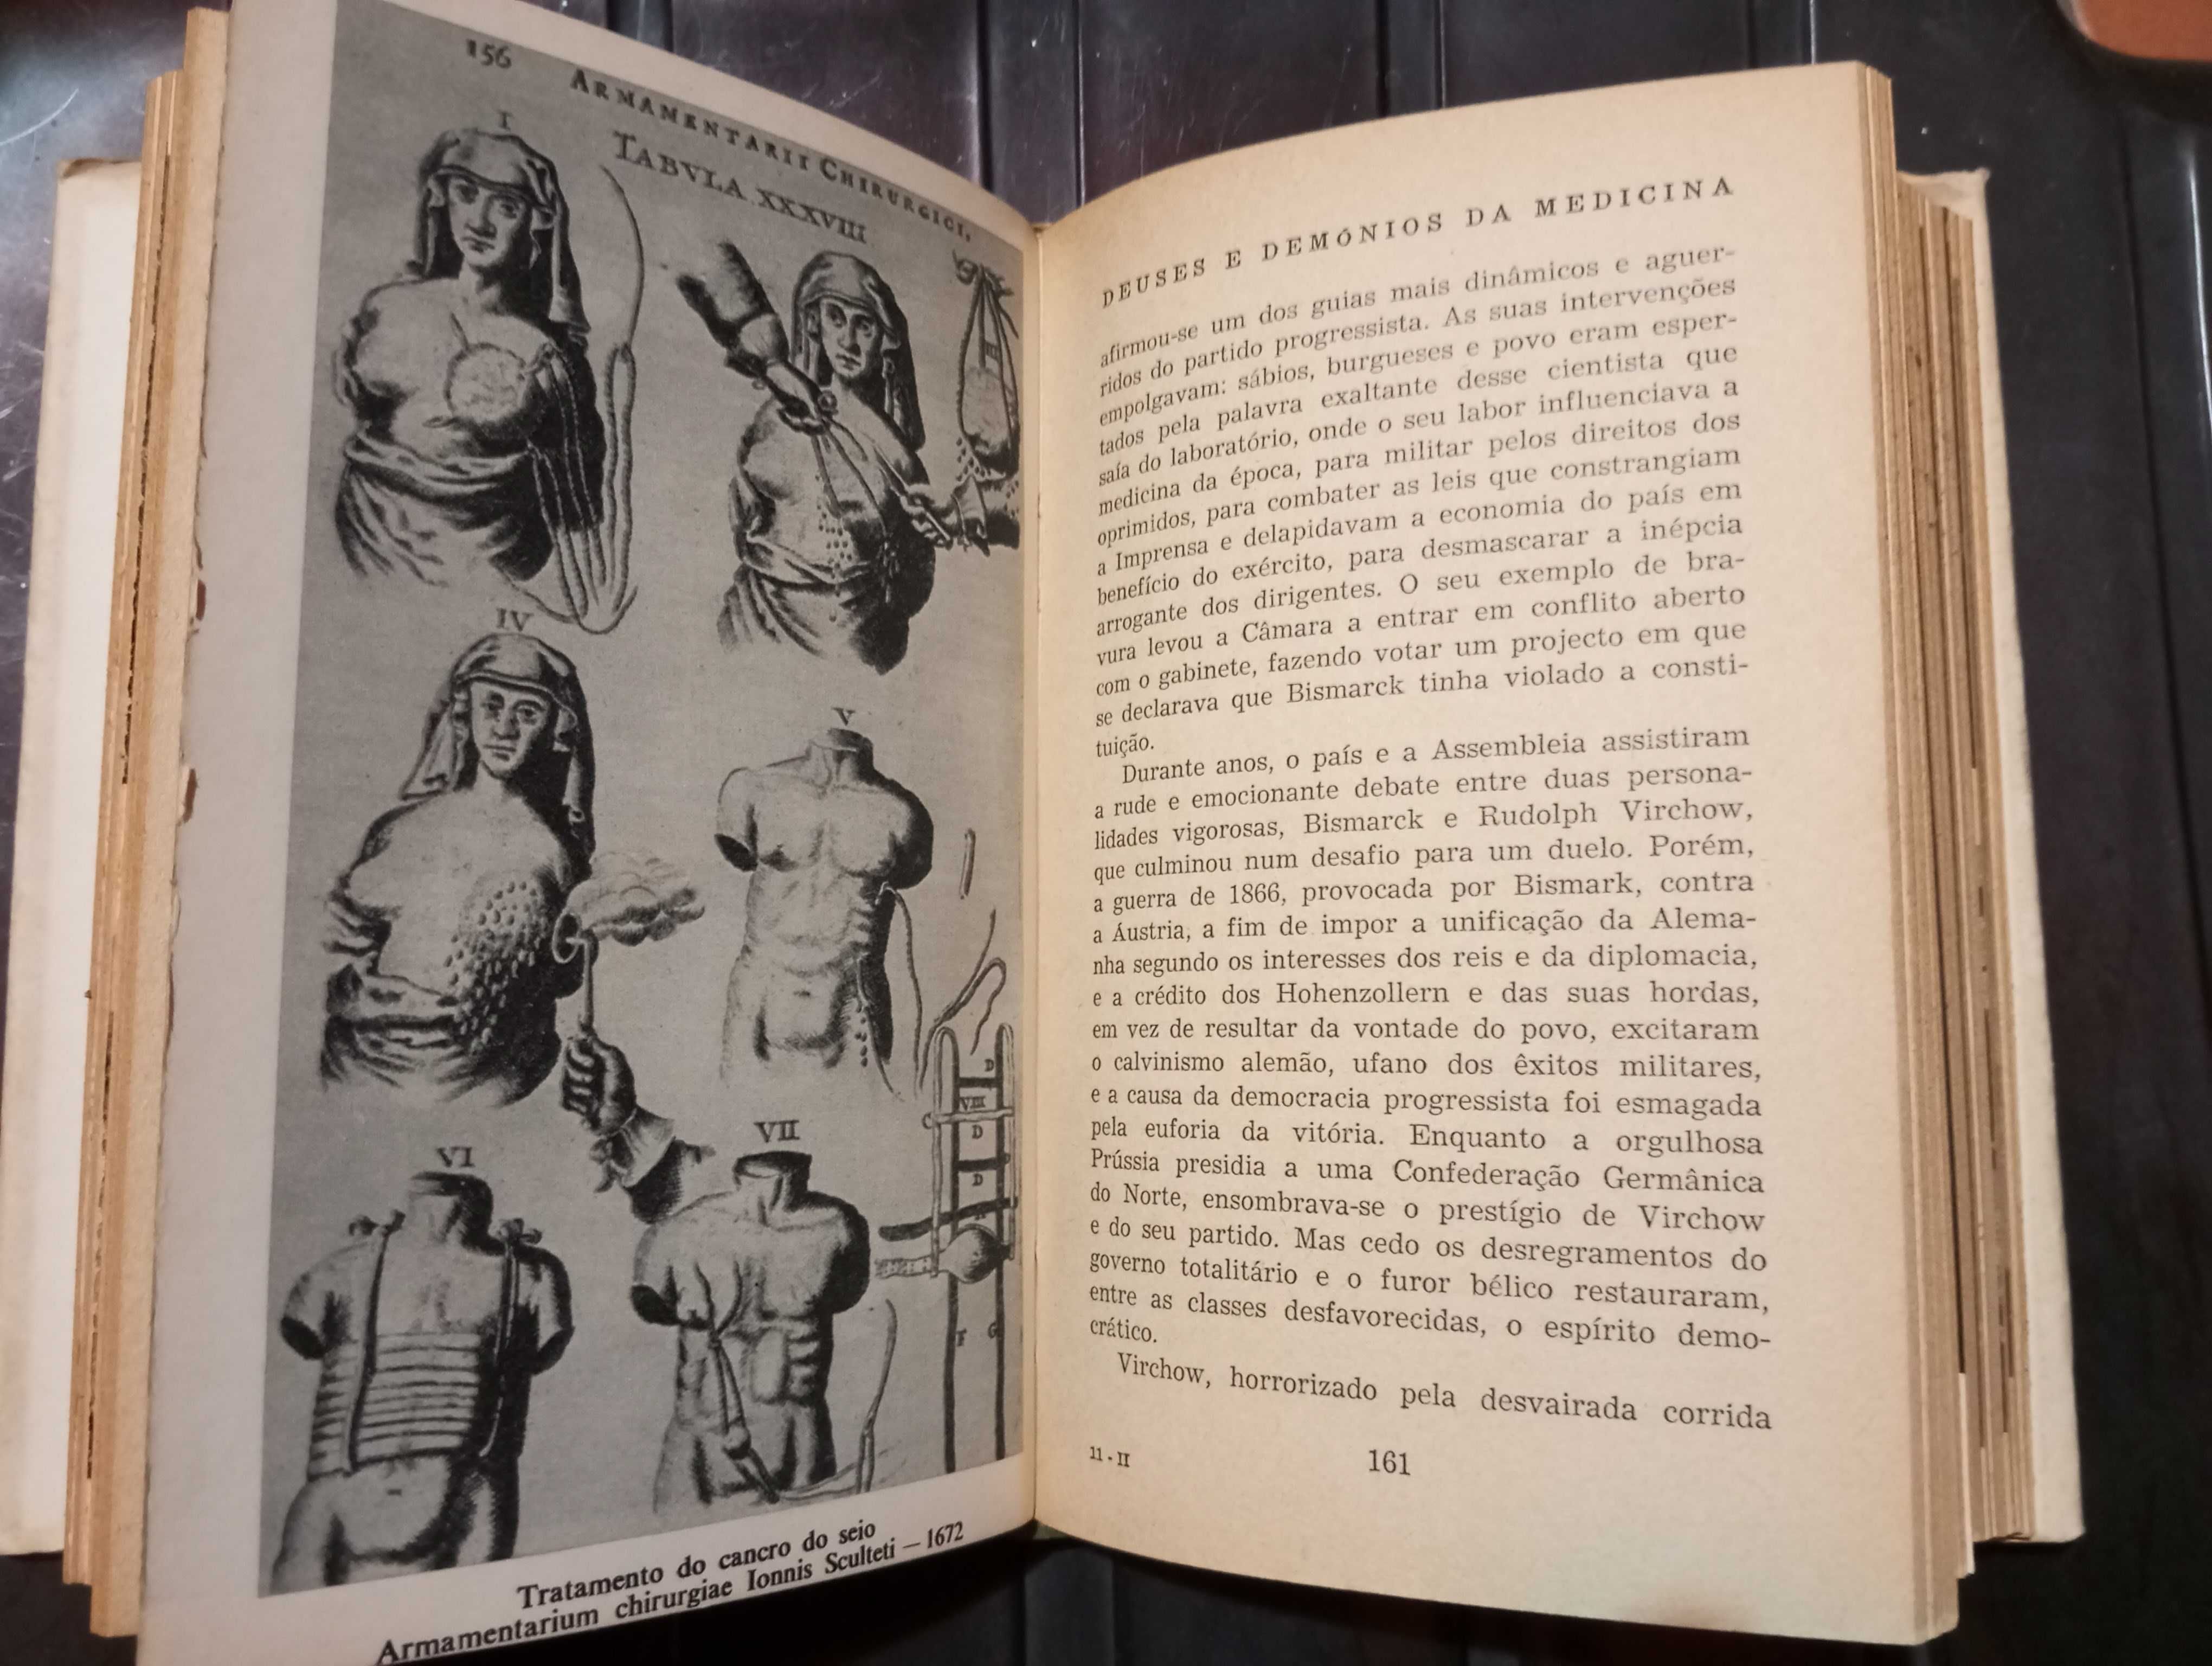 Fernando Namora -Deuses e Demónios da Medicina (2 Vol.)-Obra Completa